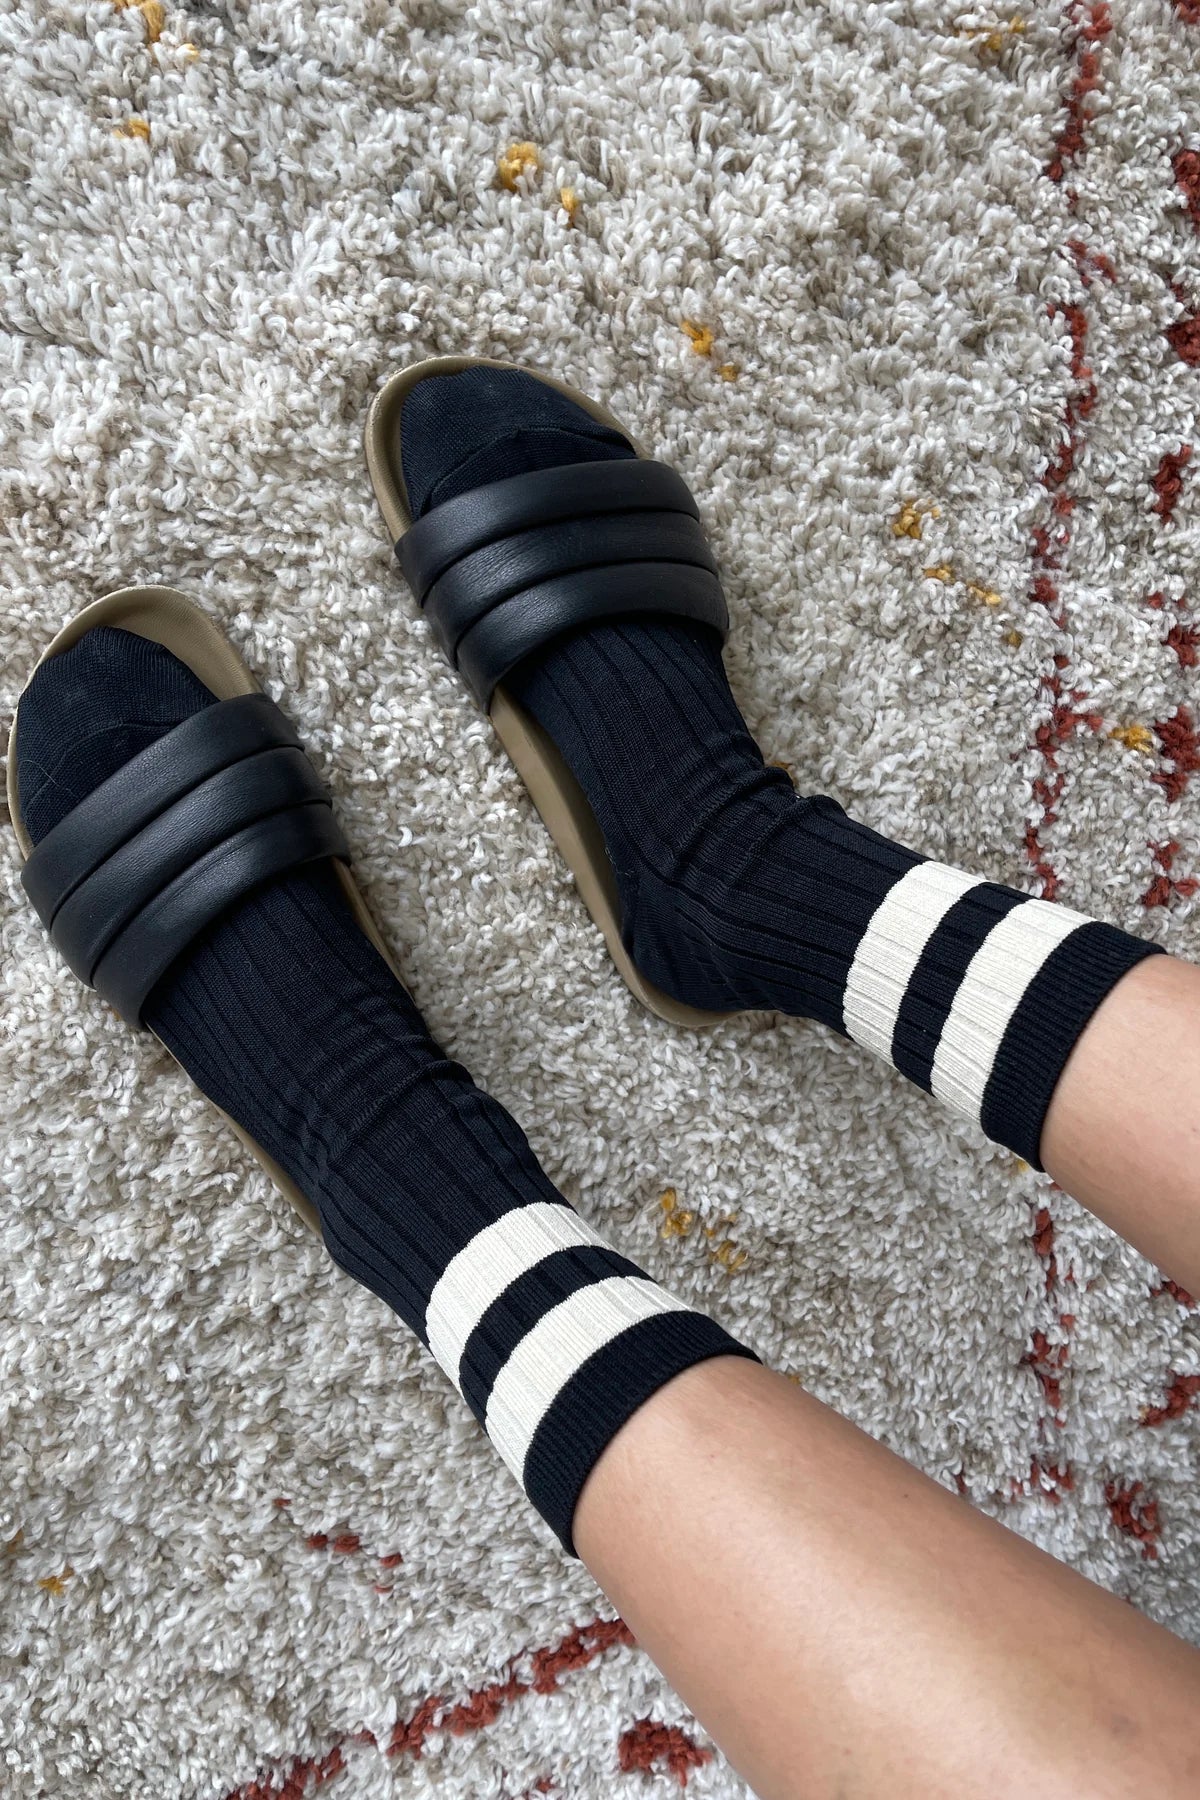 Her Varsity Socks – DUO NYC